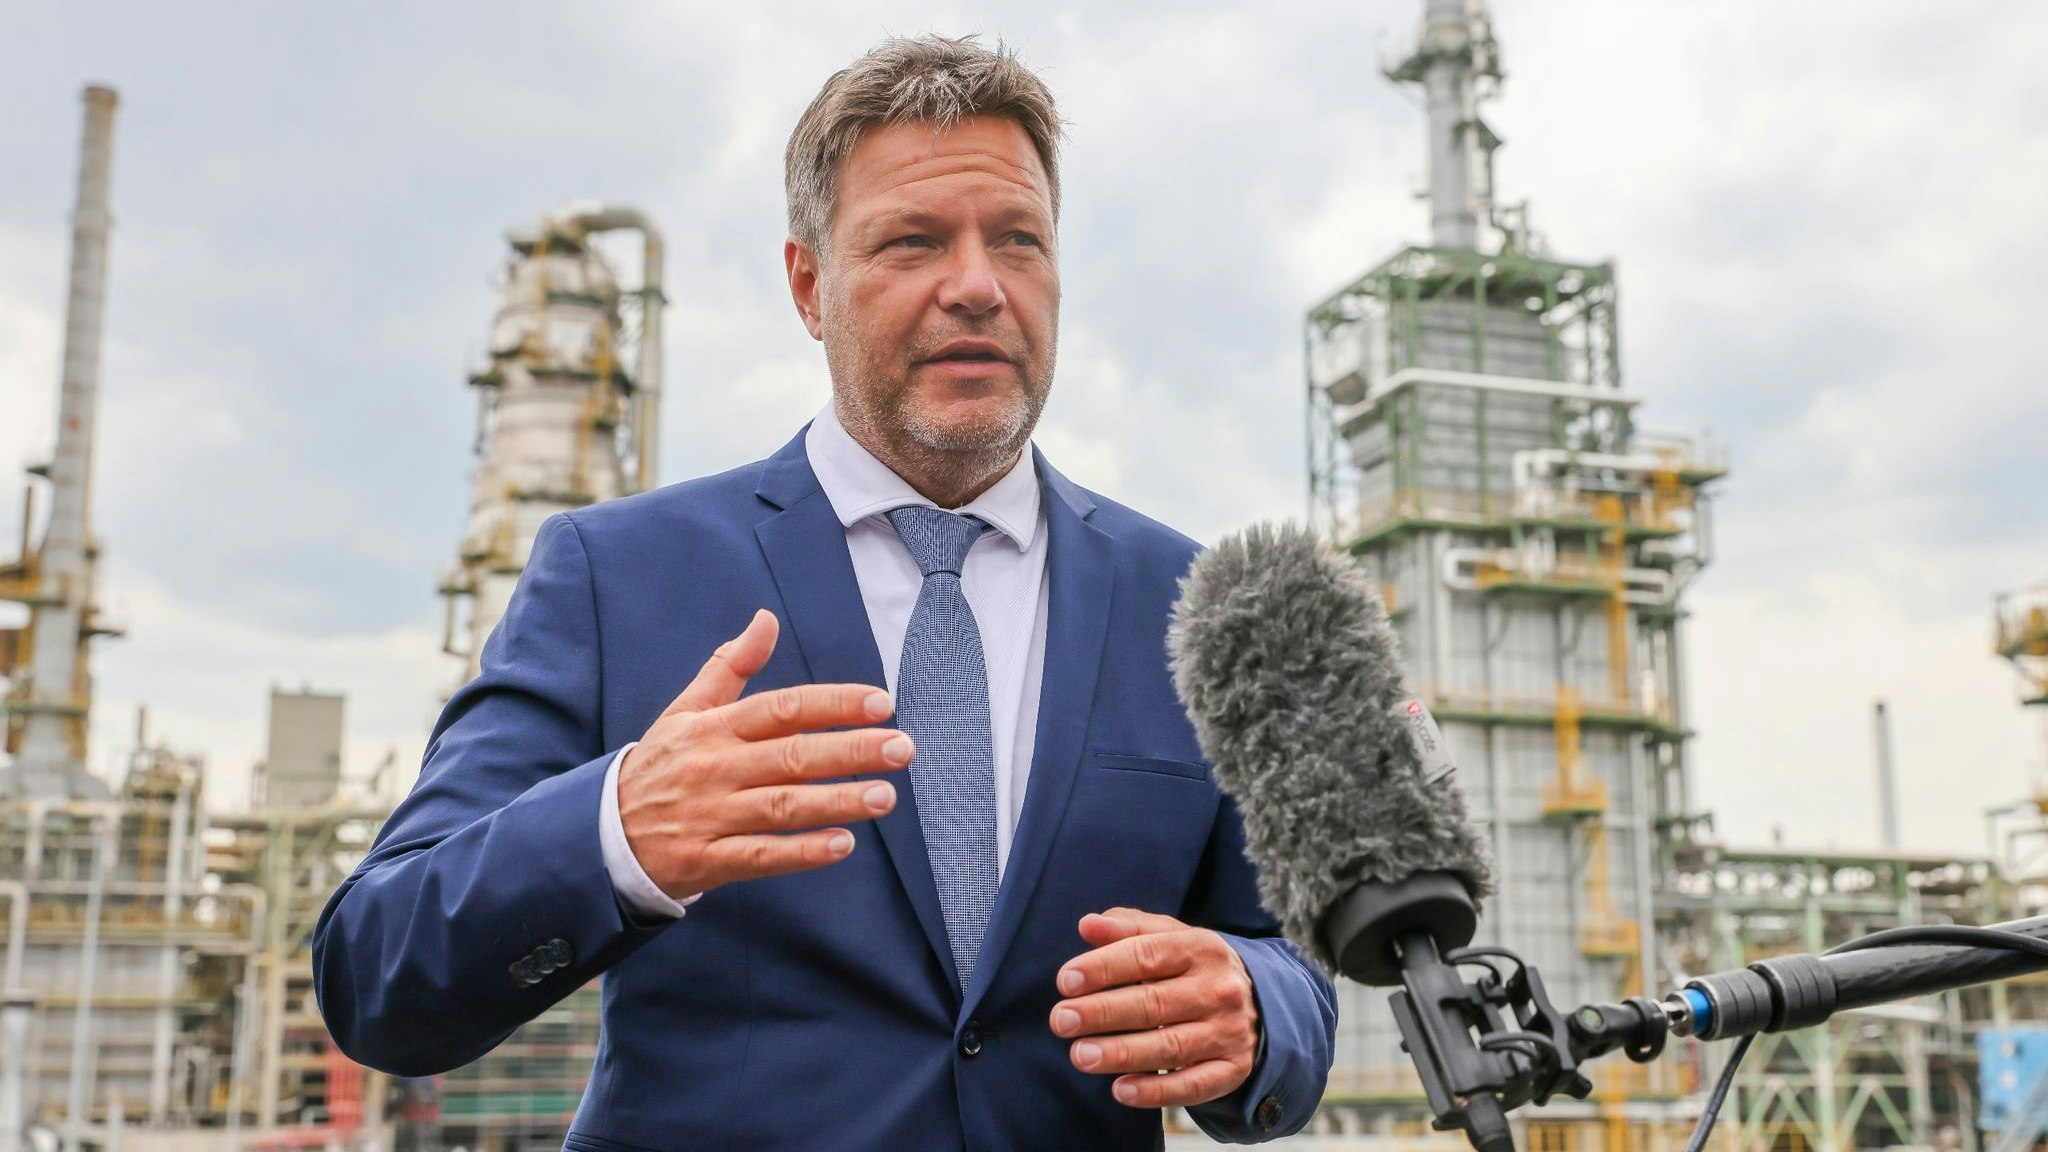 Robert Habeck (Bündnis 90/Die Grünen), Bundesminister für Wirtschaft und Klimaschutz, besucht die Total Raffinerie Leuna. Foto: dpa/Woitas